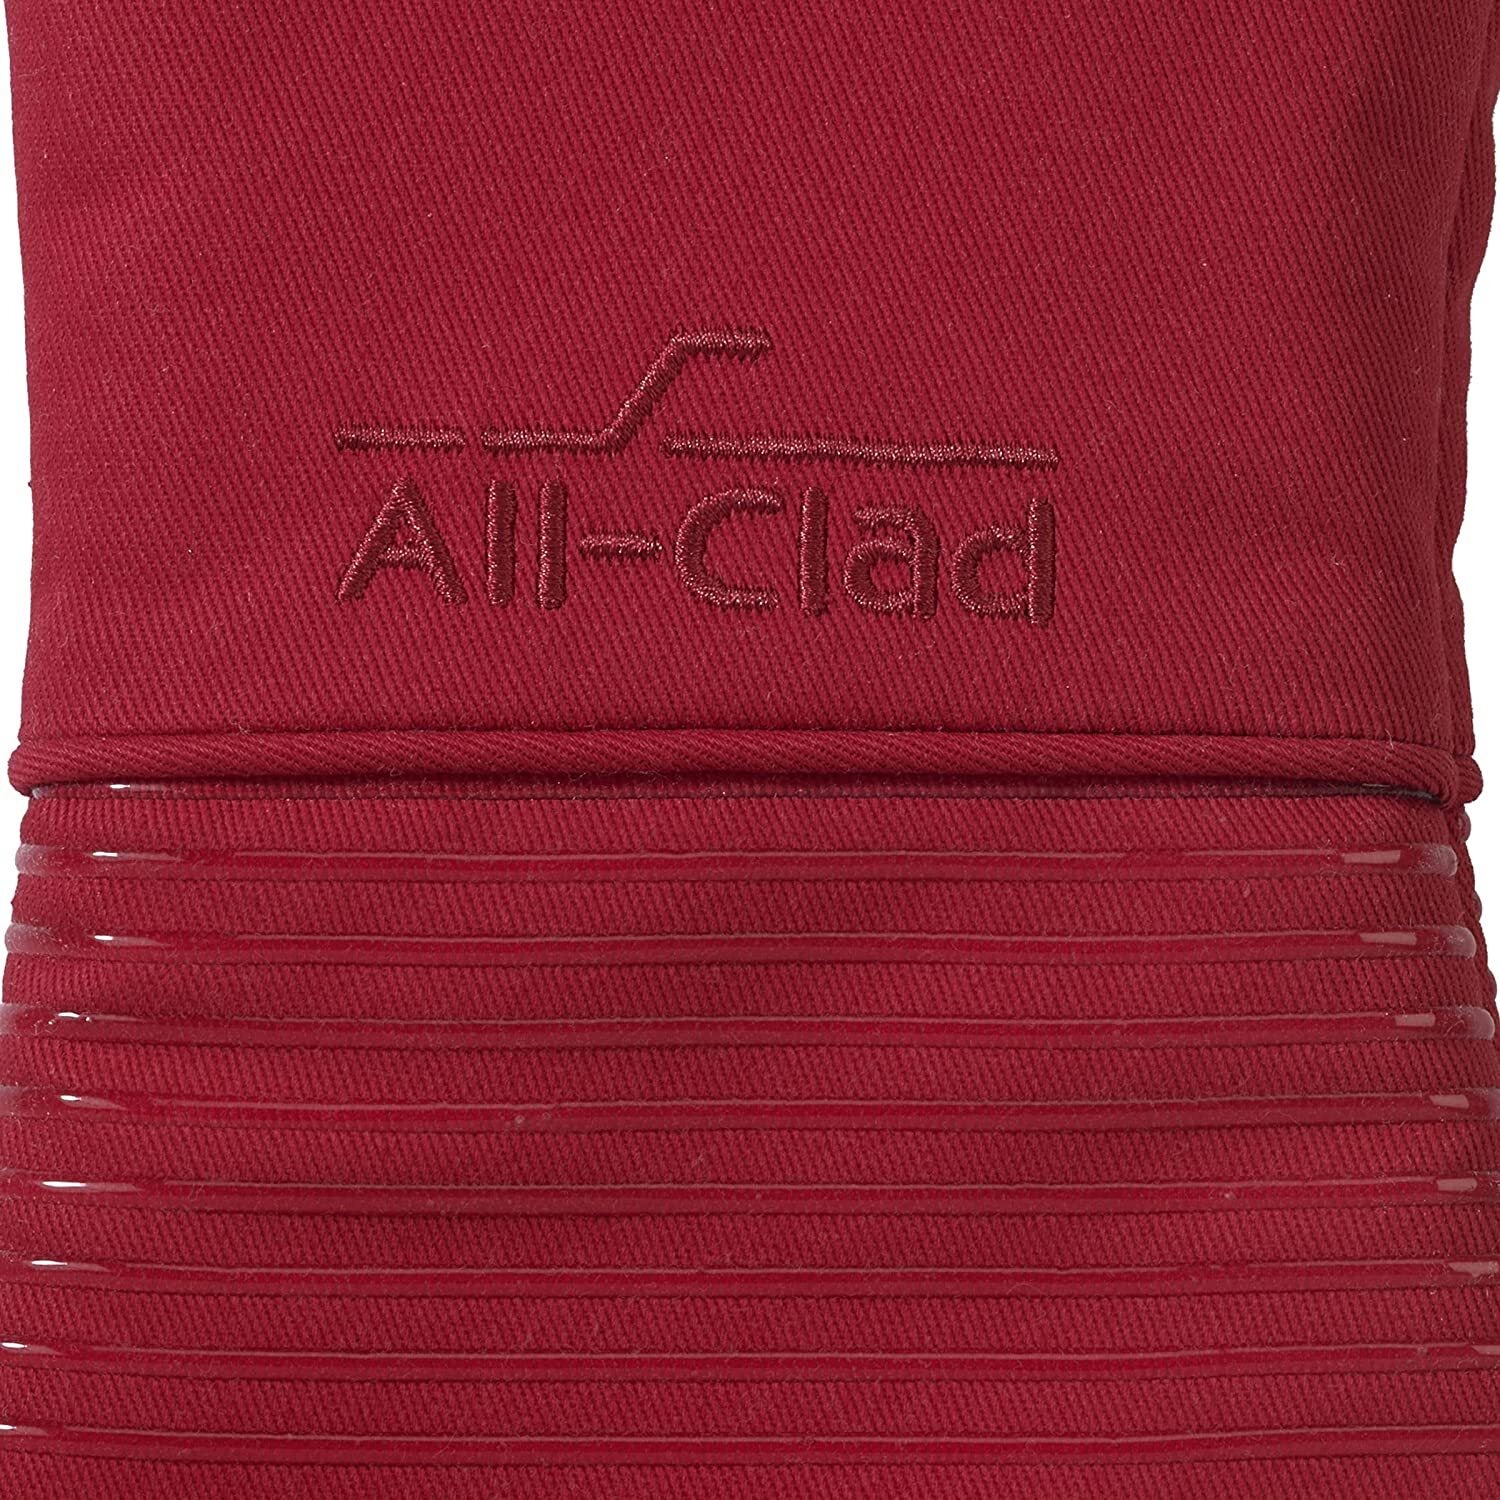 All-Clad Silicone Oven Mitt | Chili